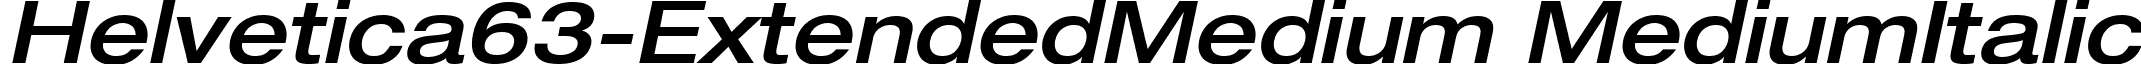 Helvetica63-ExtendedMedium MediumItalic font - Helvetica63-ExtendedMedium Oblique.ttf